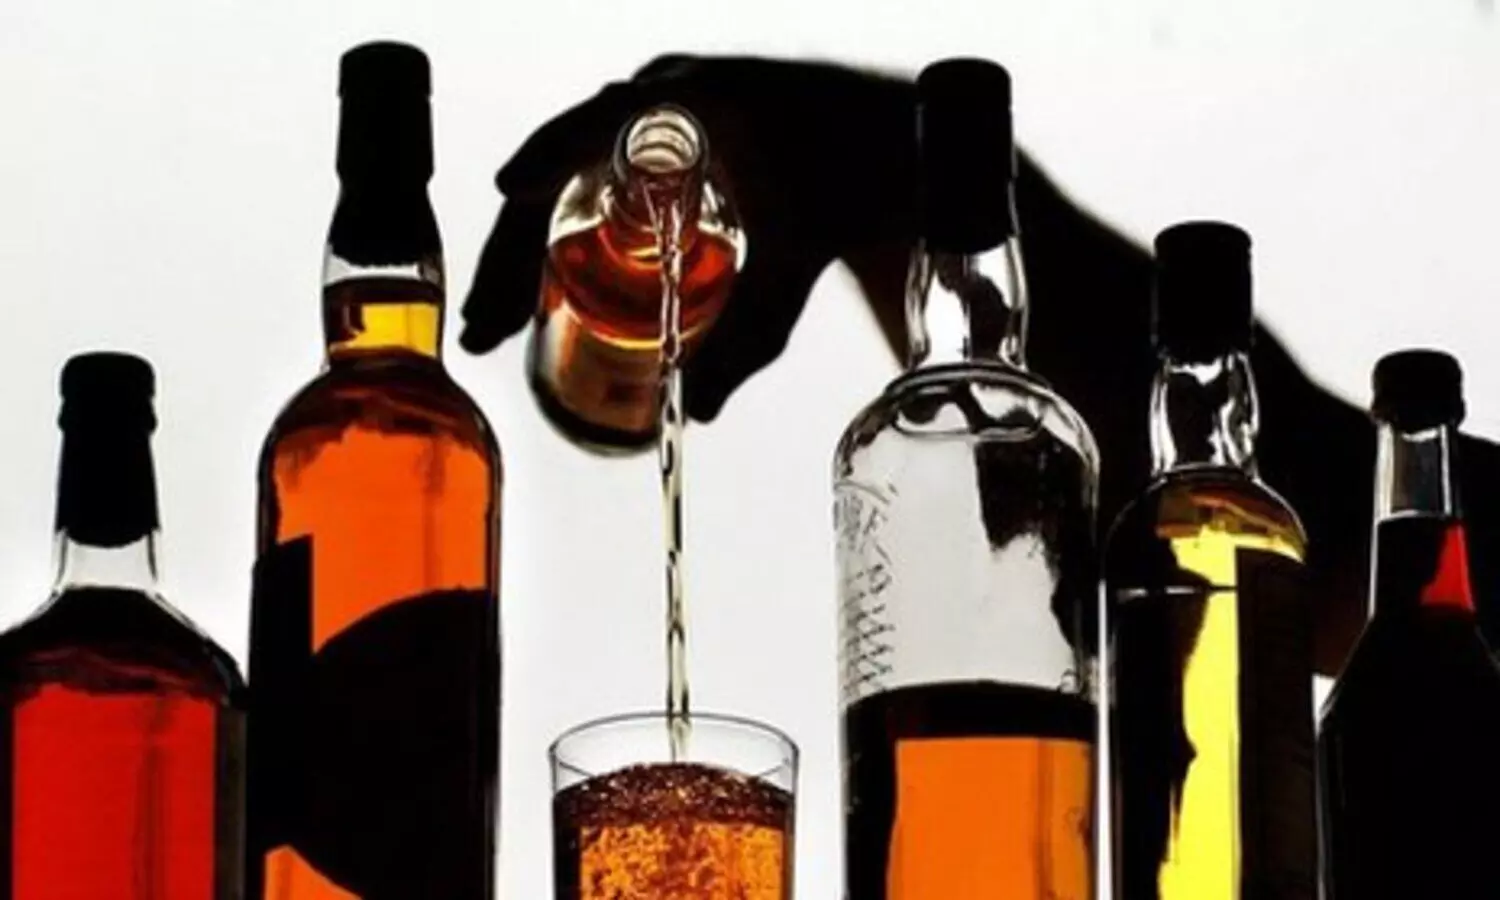 Pratapgarh liquor mafia